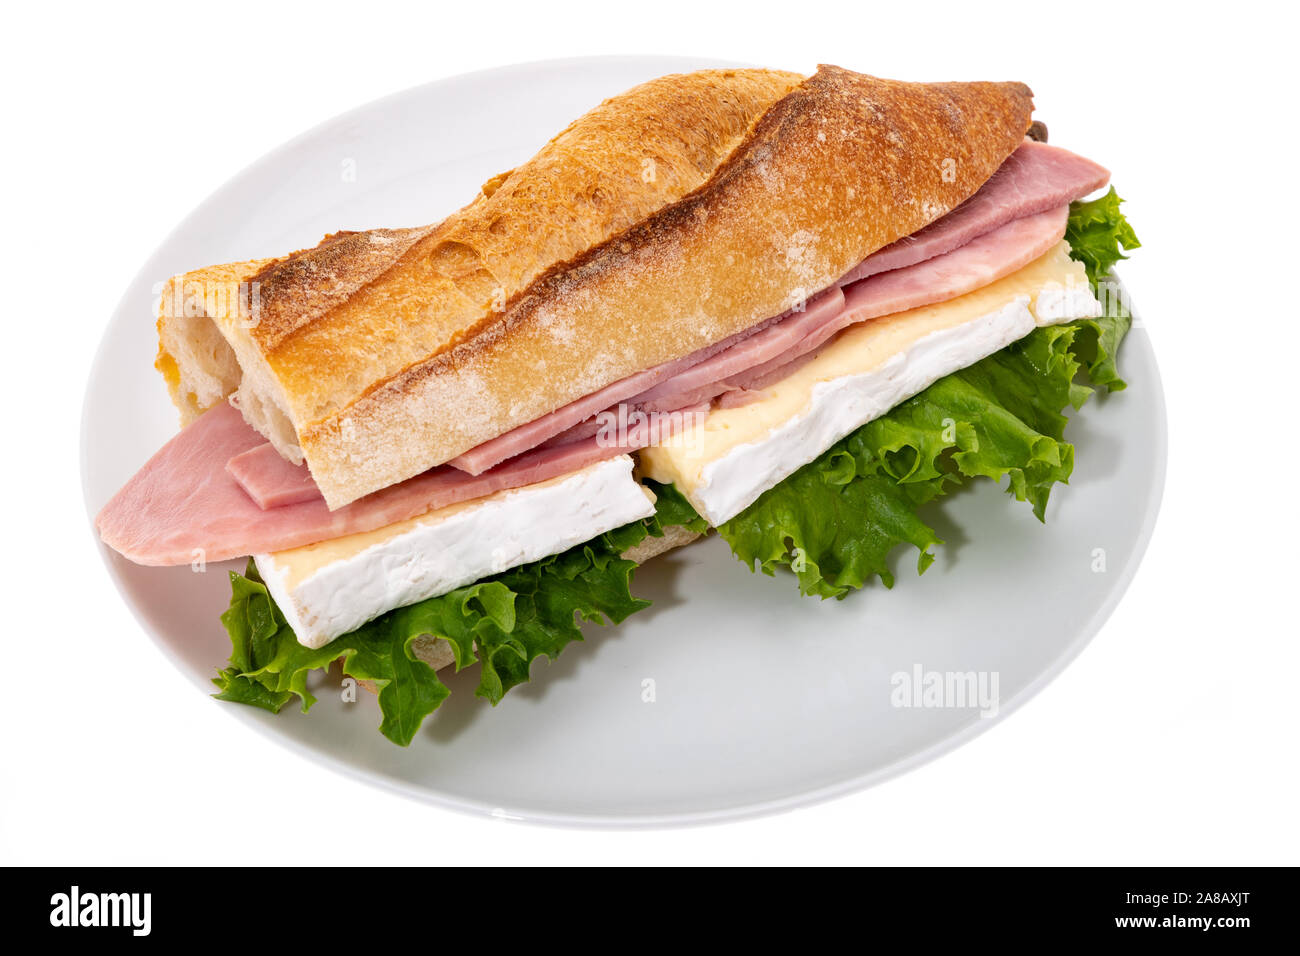 Le Camembert et le sandwich au jambon au pain croustillant sur une plaque - Fond blanc Banque D'Images